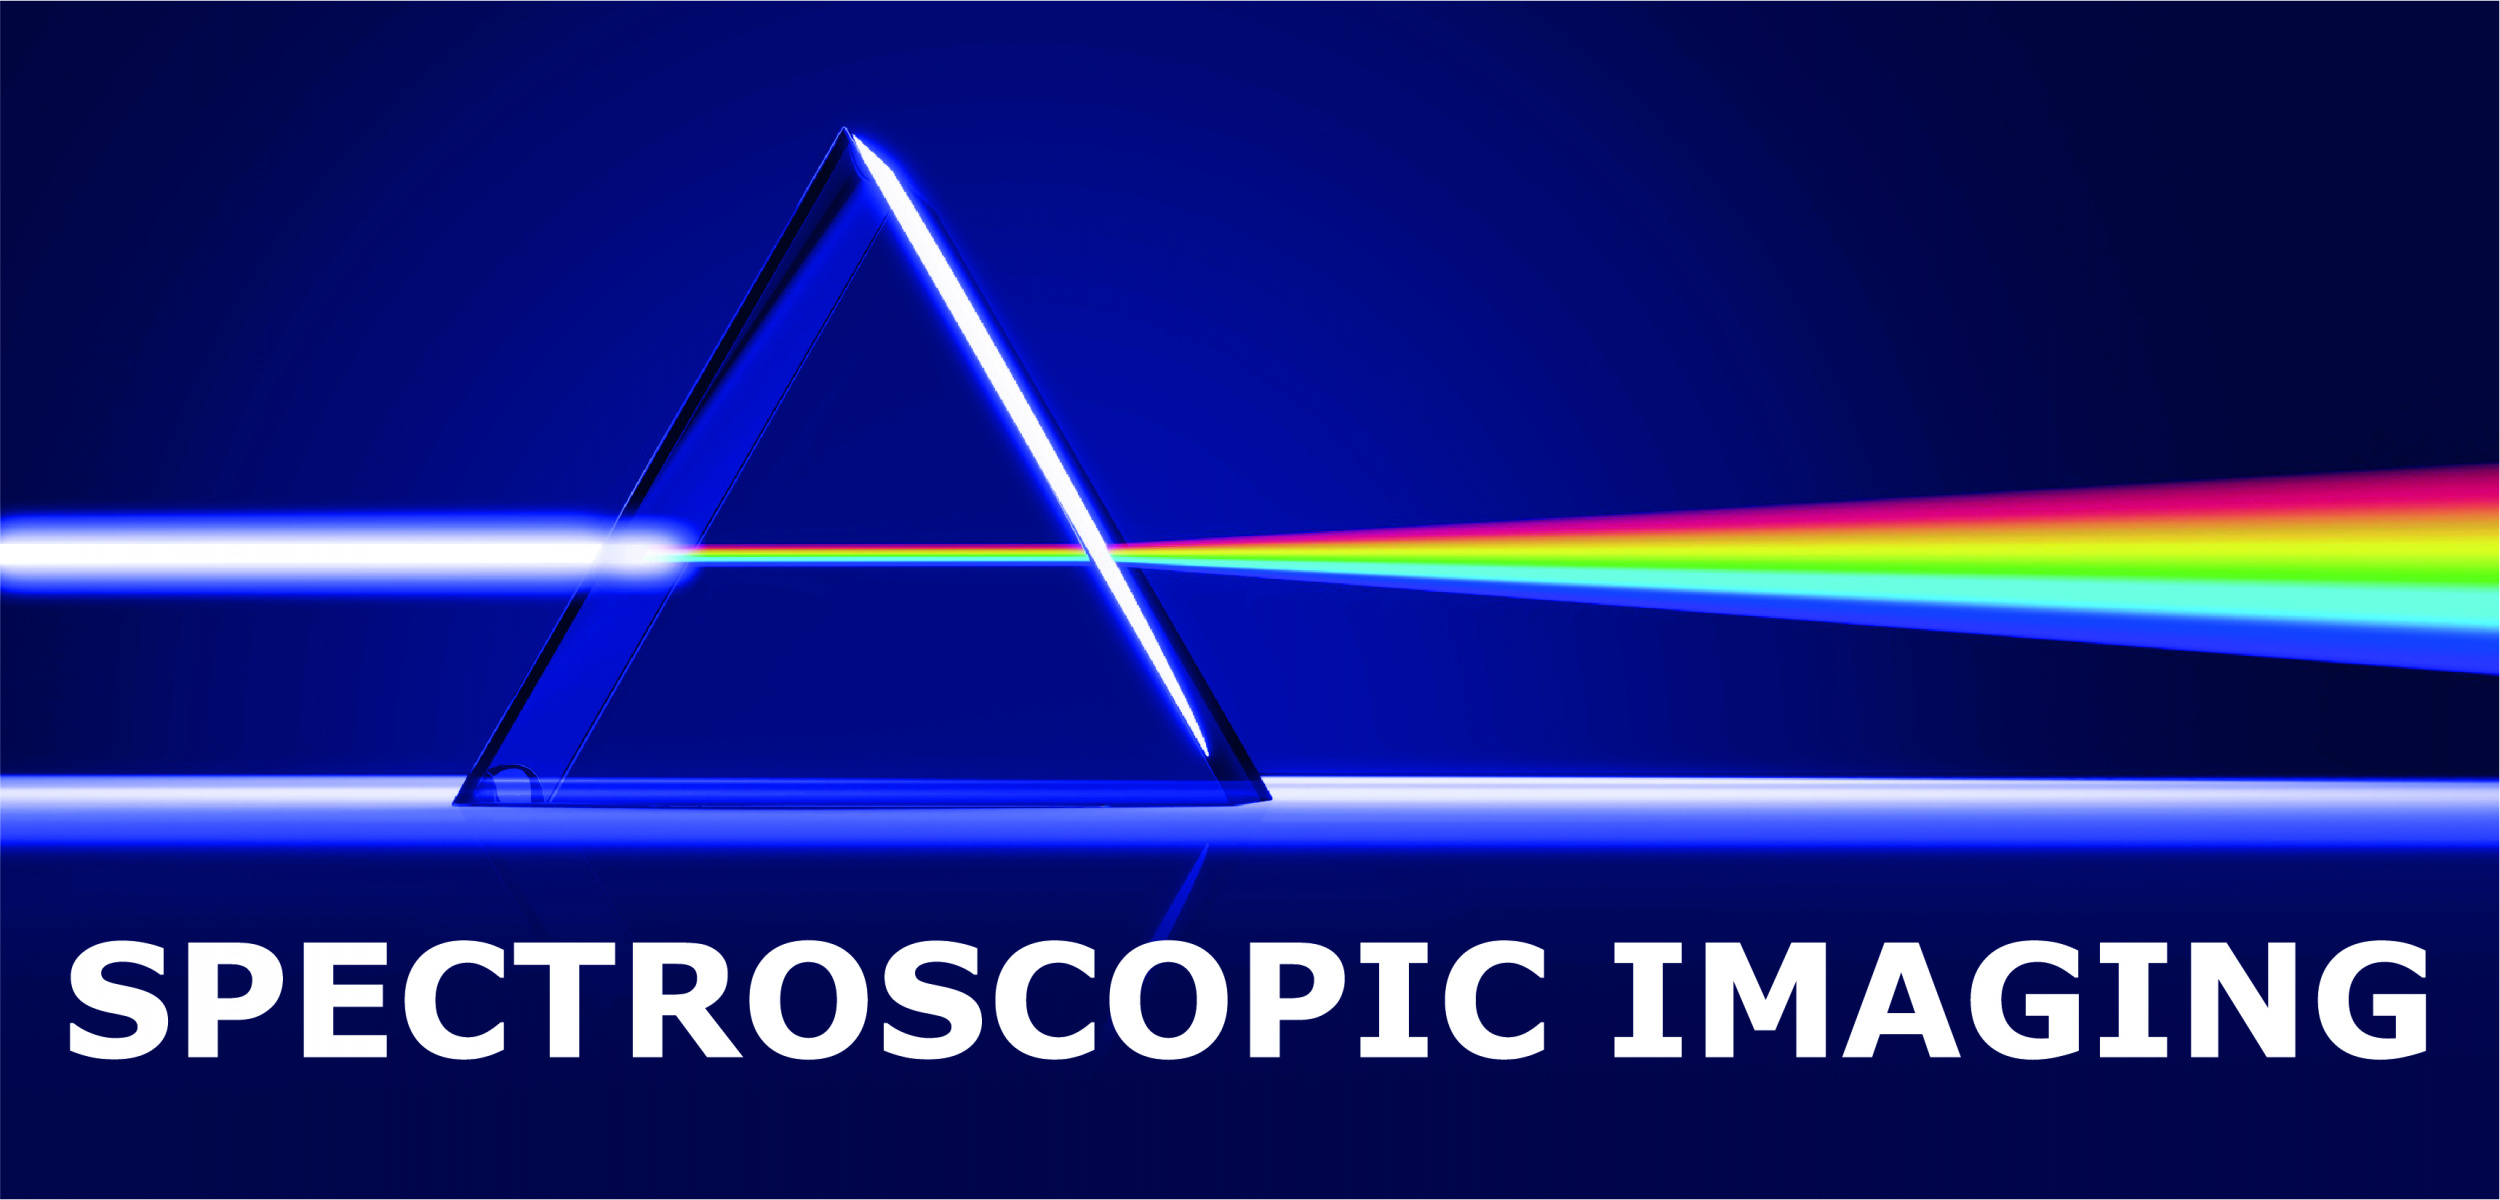 Logo spectroscopic imaging 02.jpg